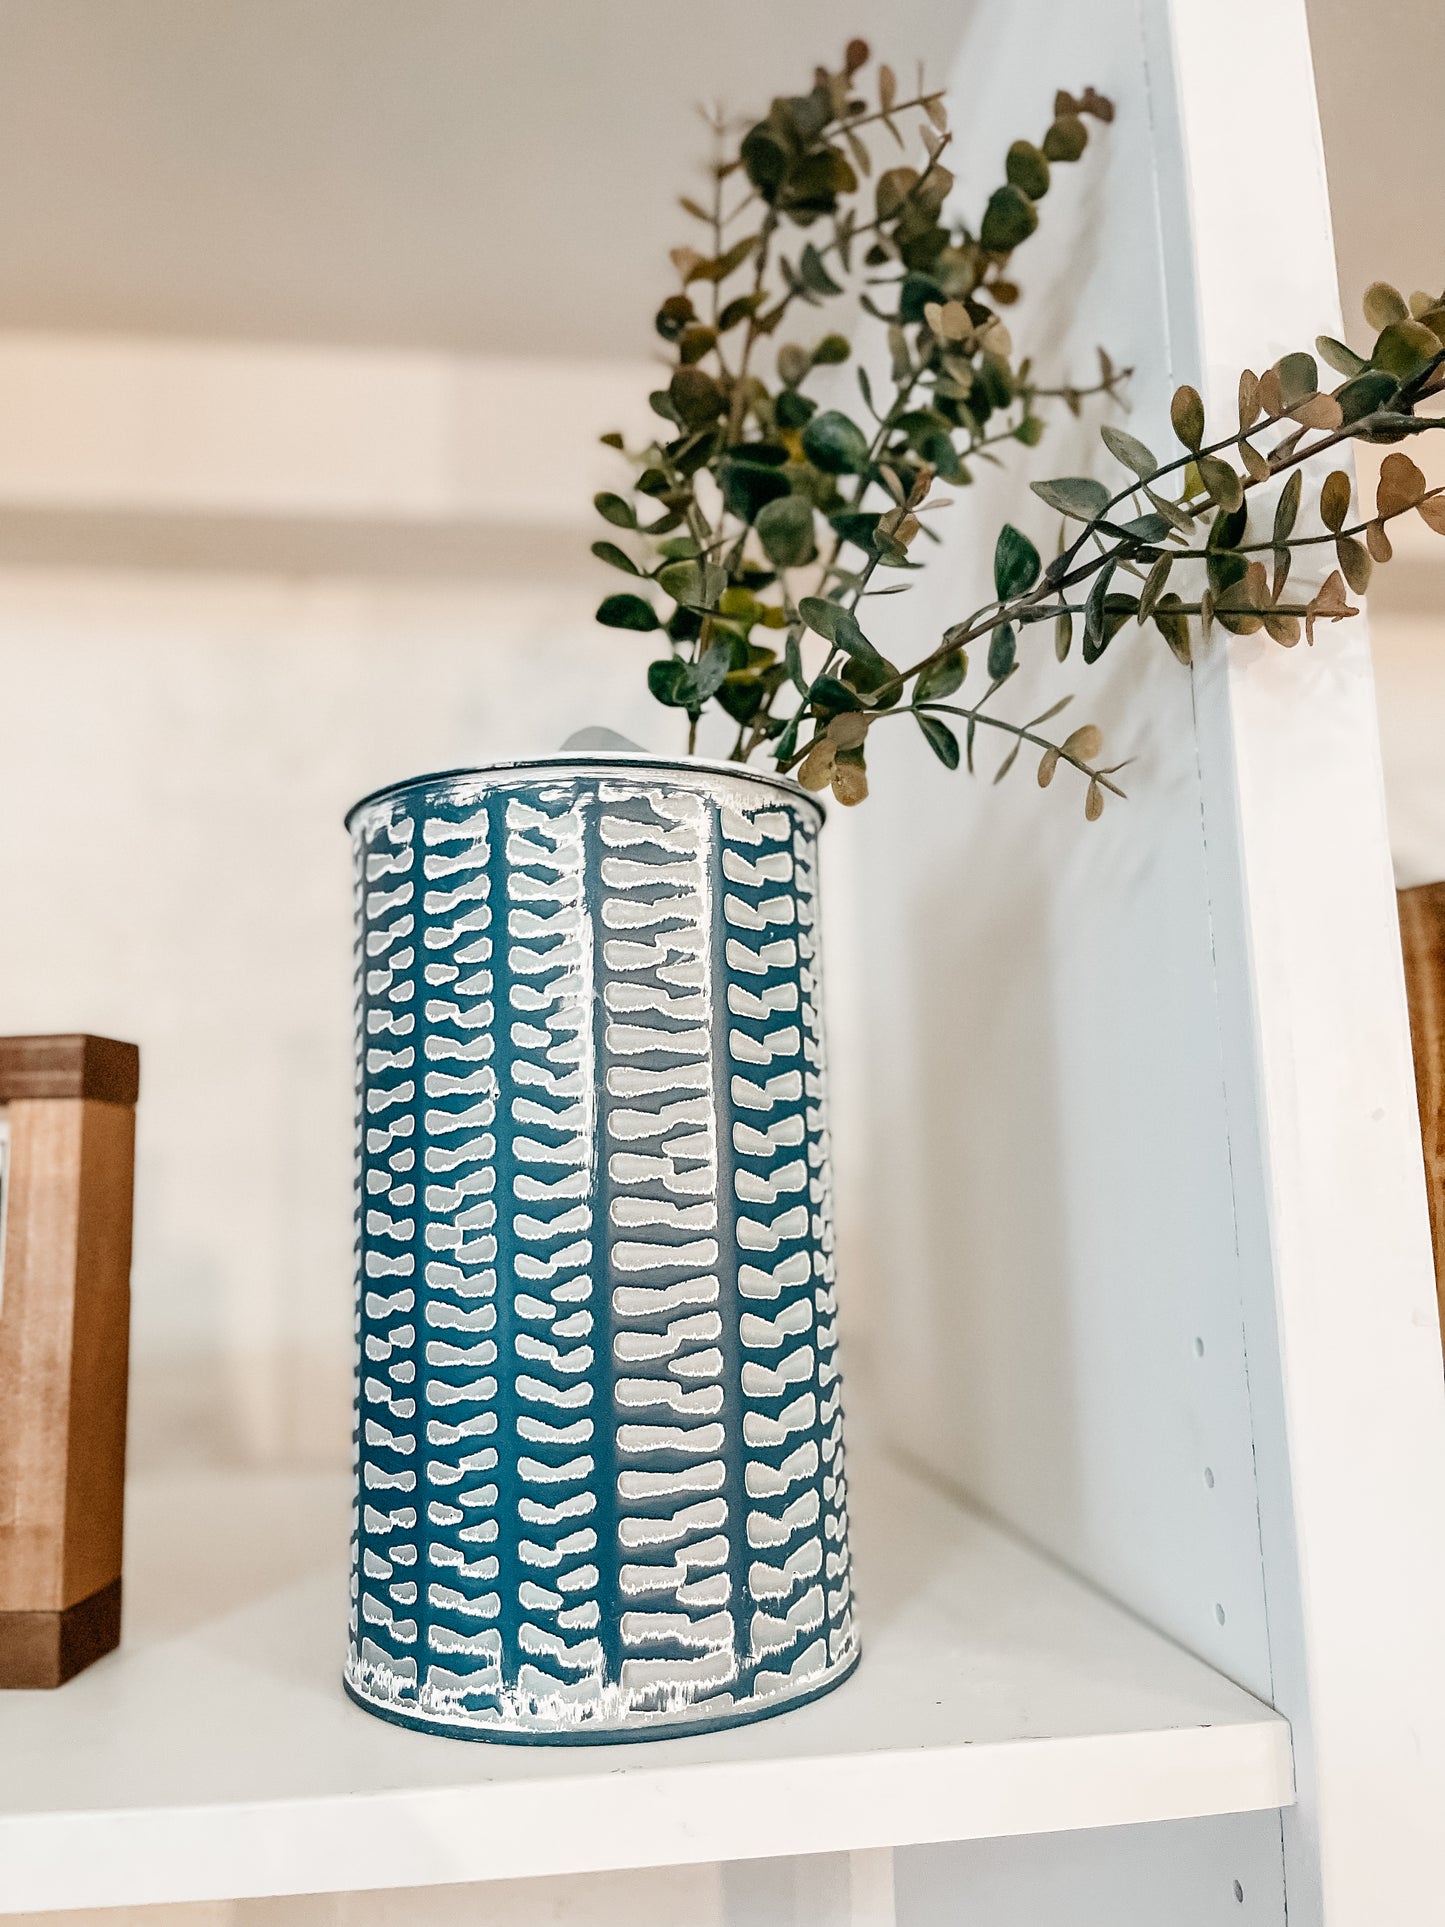 Blue & White Vases